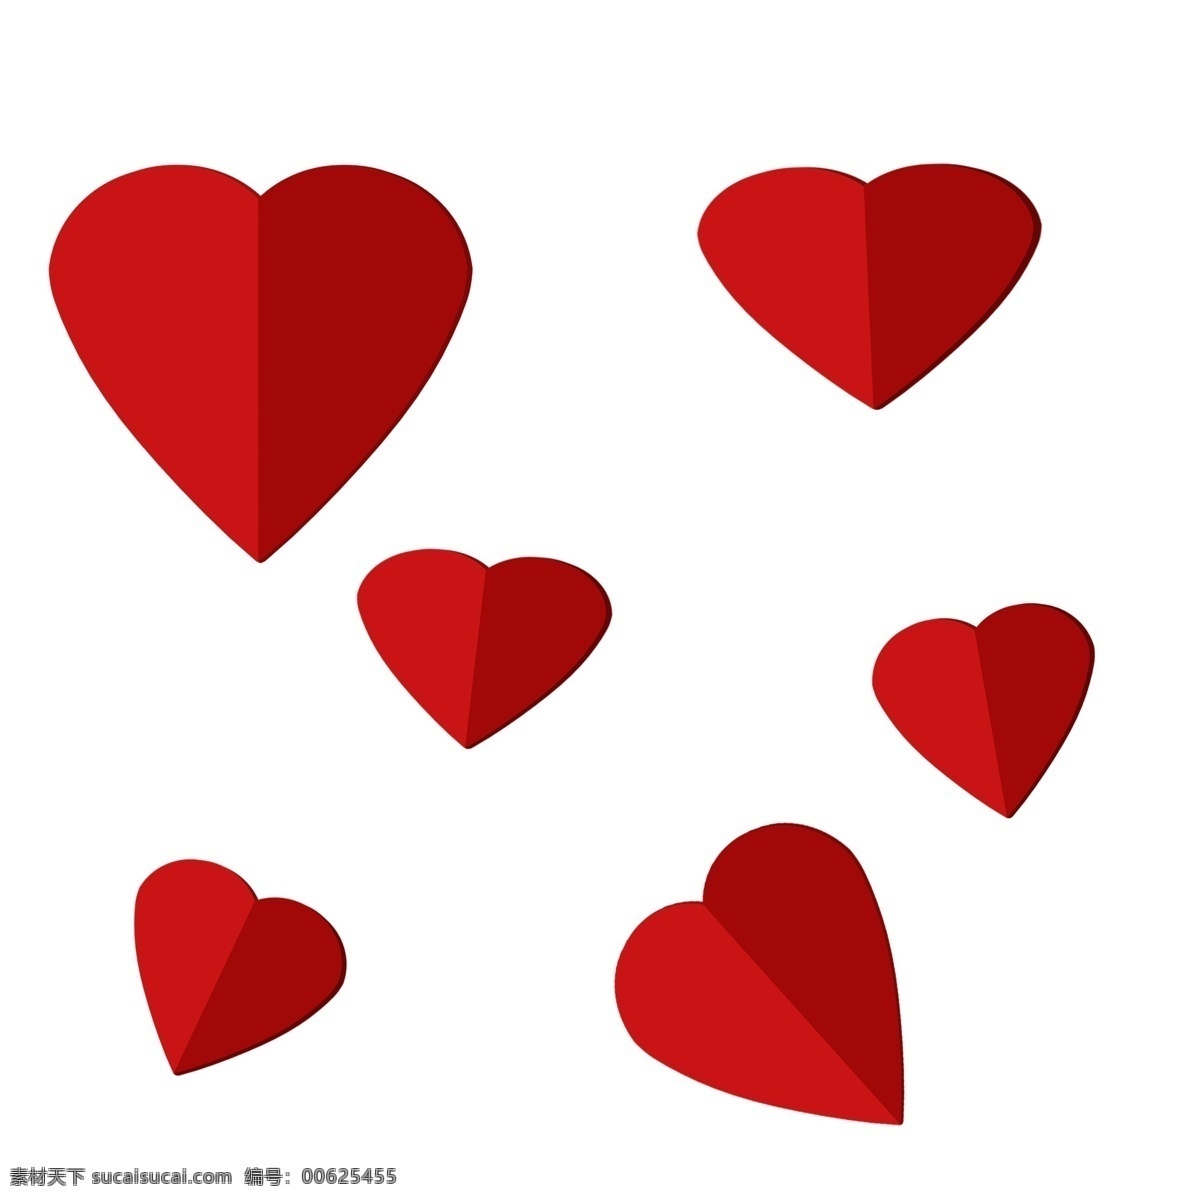 折纸 六 颗 爱心 装饰 红色 红色折纸爱心 六颗小红心 卡通爱心 爱心装饰 爱心贴纸装饰 爱心图案